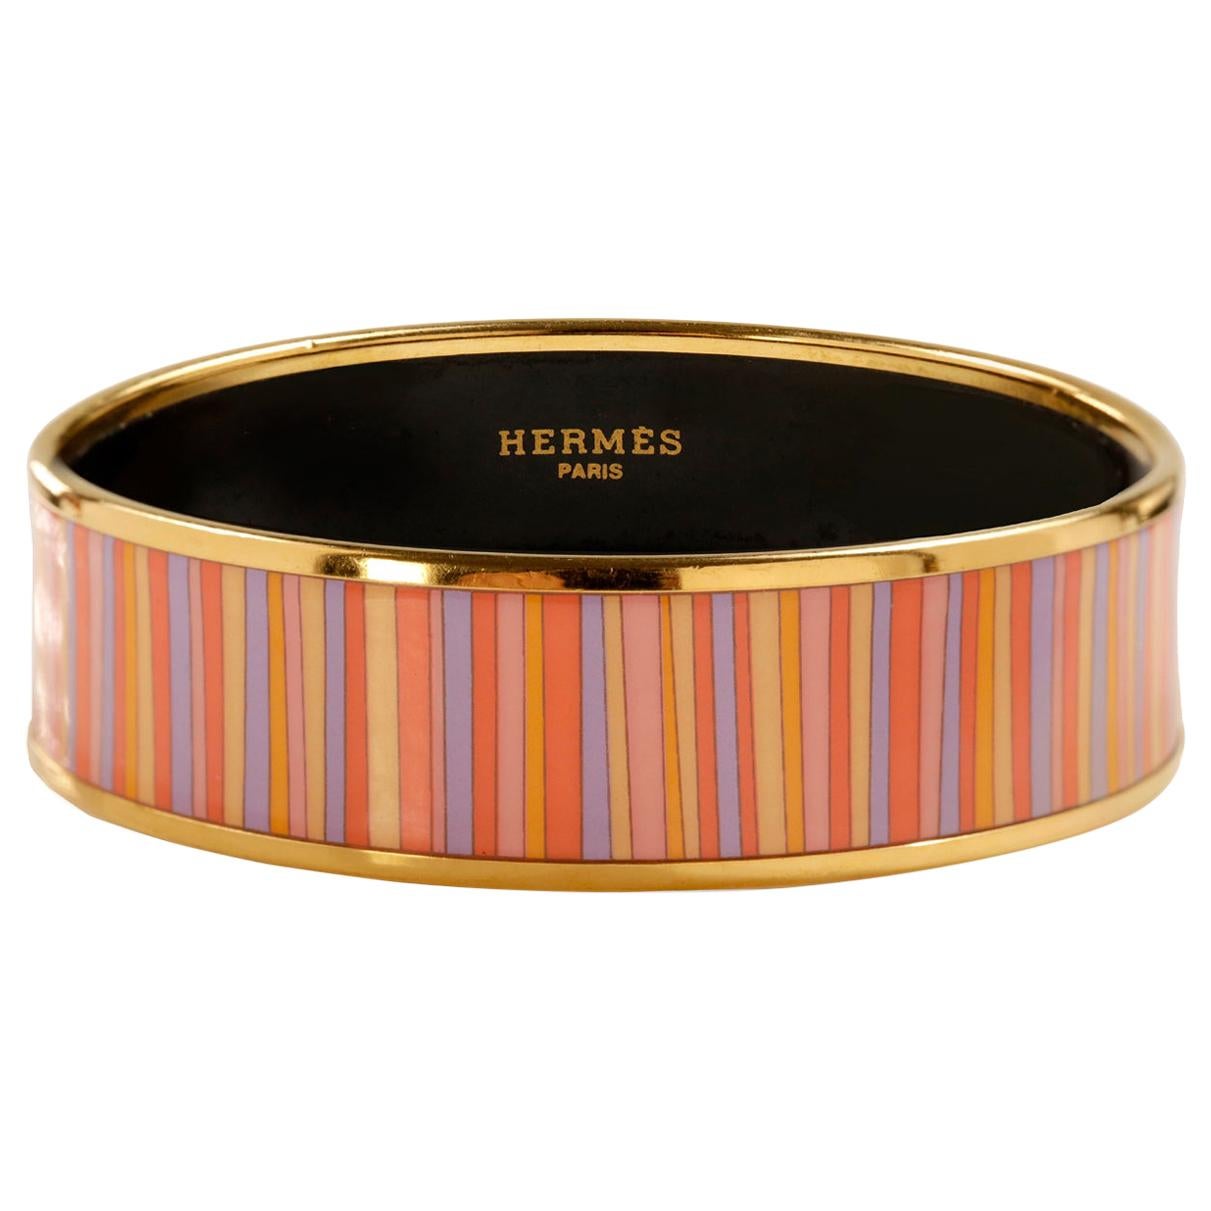 Bracciale Hermès con smalto a righe in vendita su 1stDibs